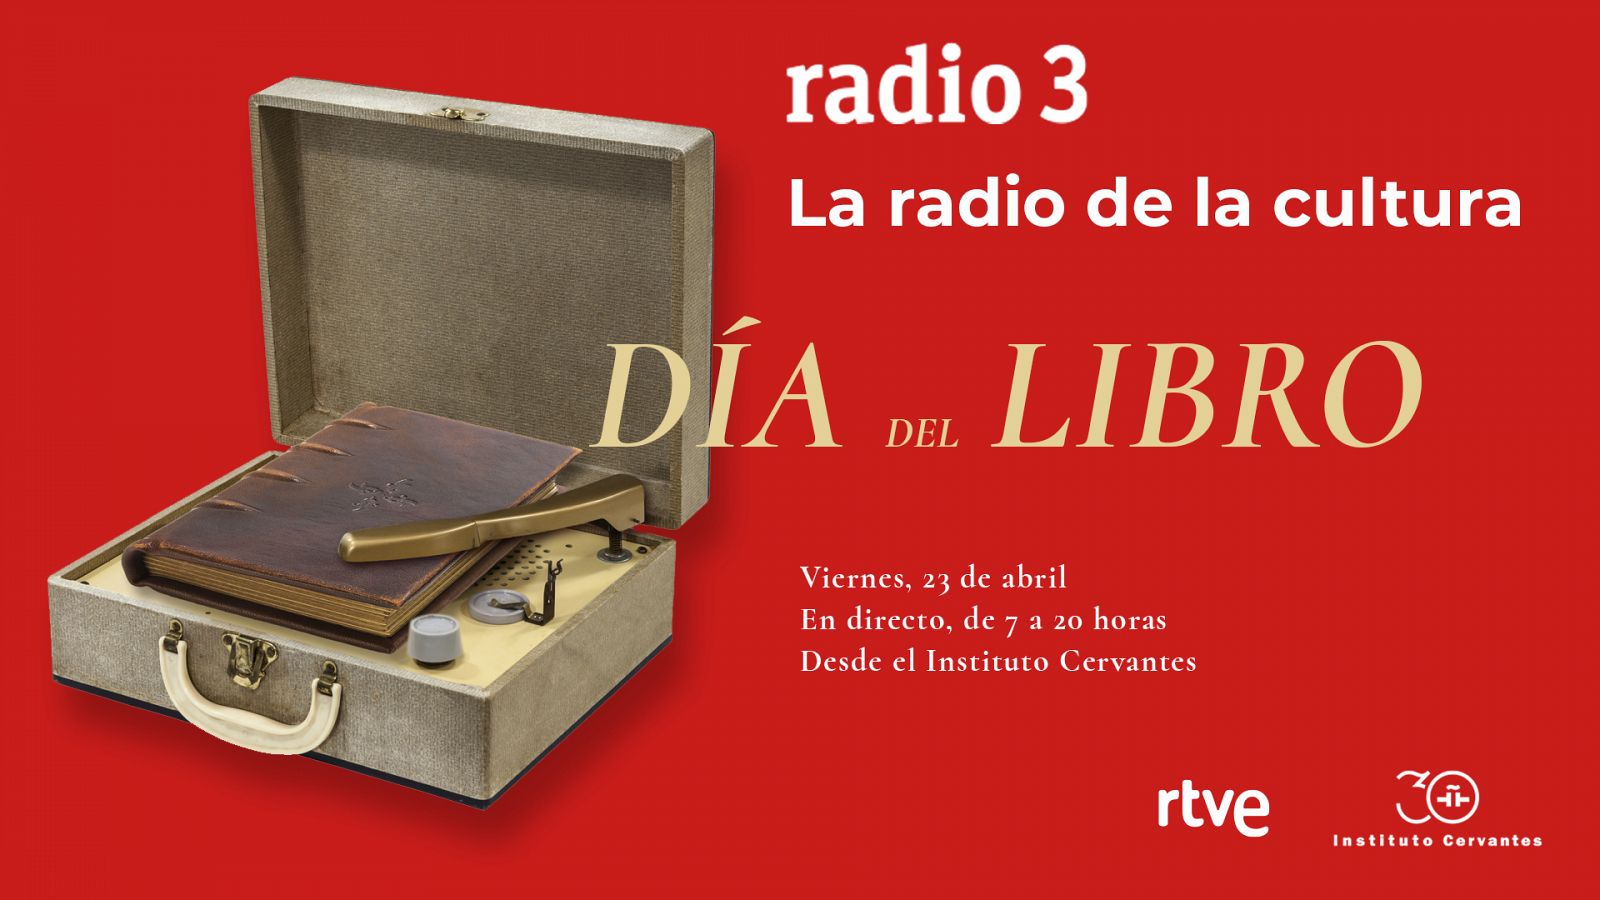 De 7 a 20 horas, celebramos el Día del Libro en directo desde el Instituto Cervantes